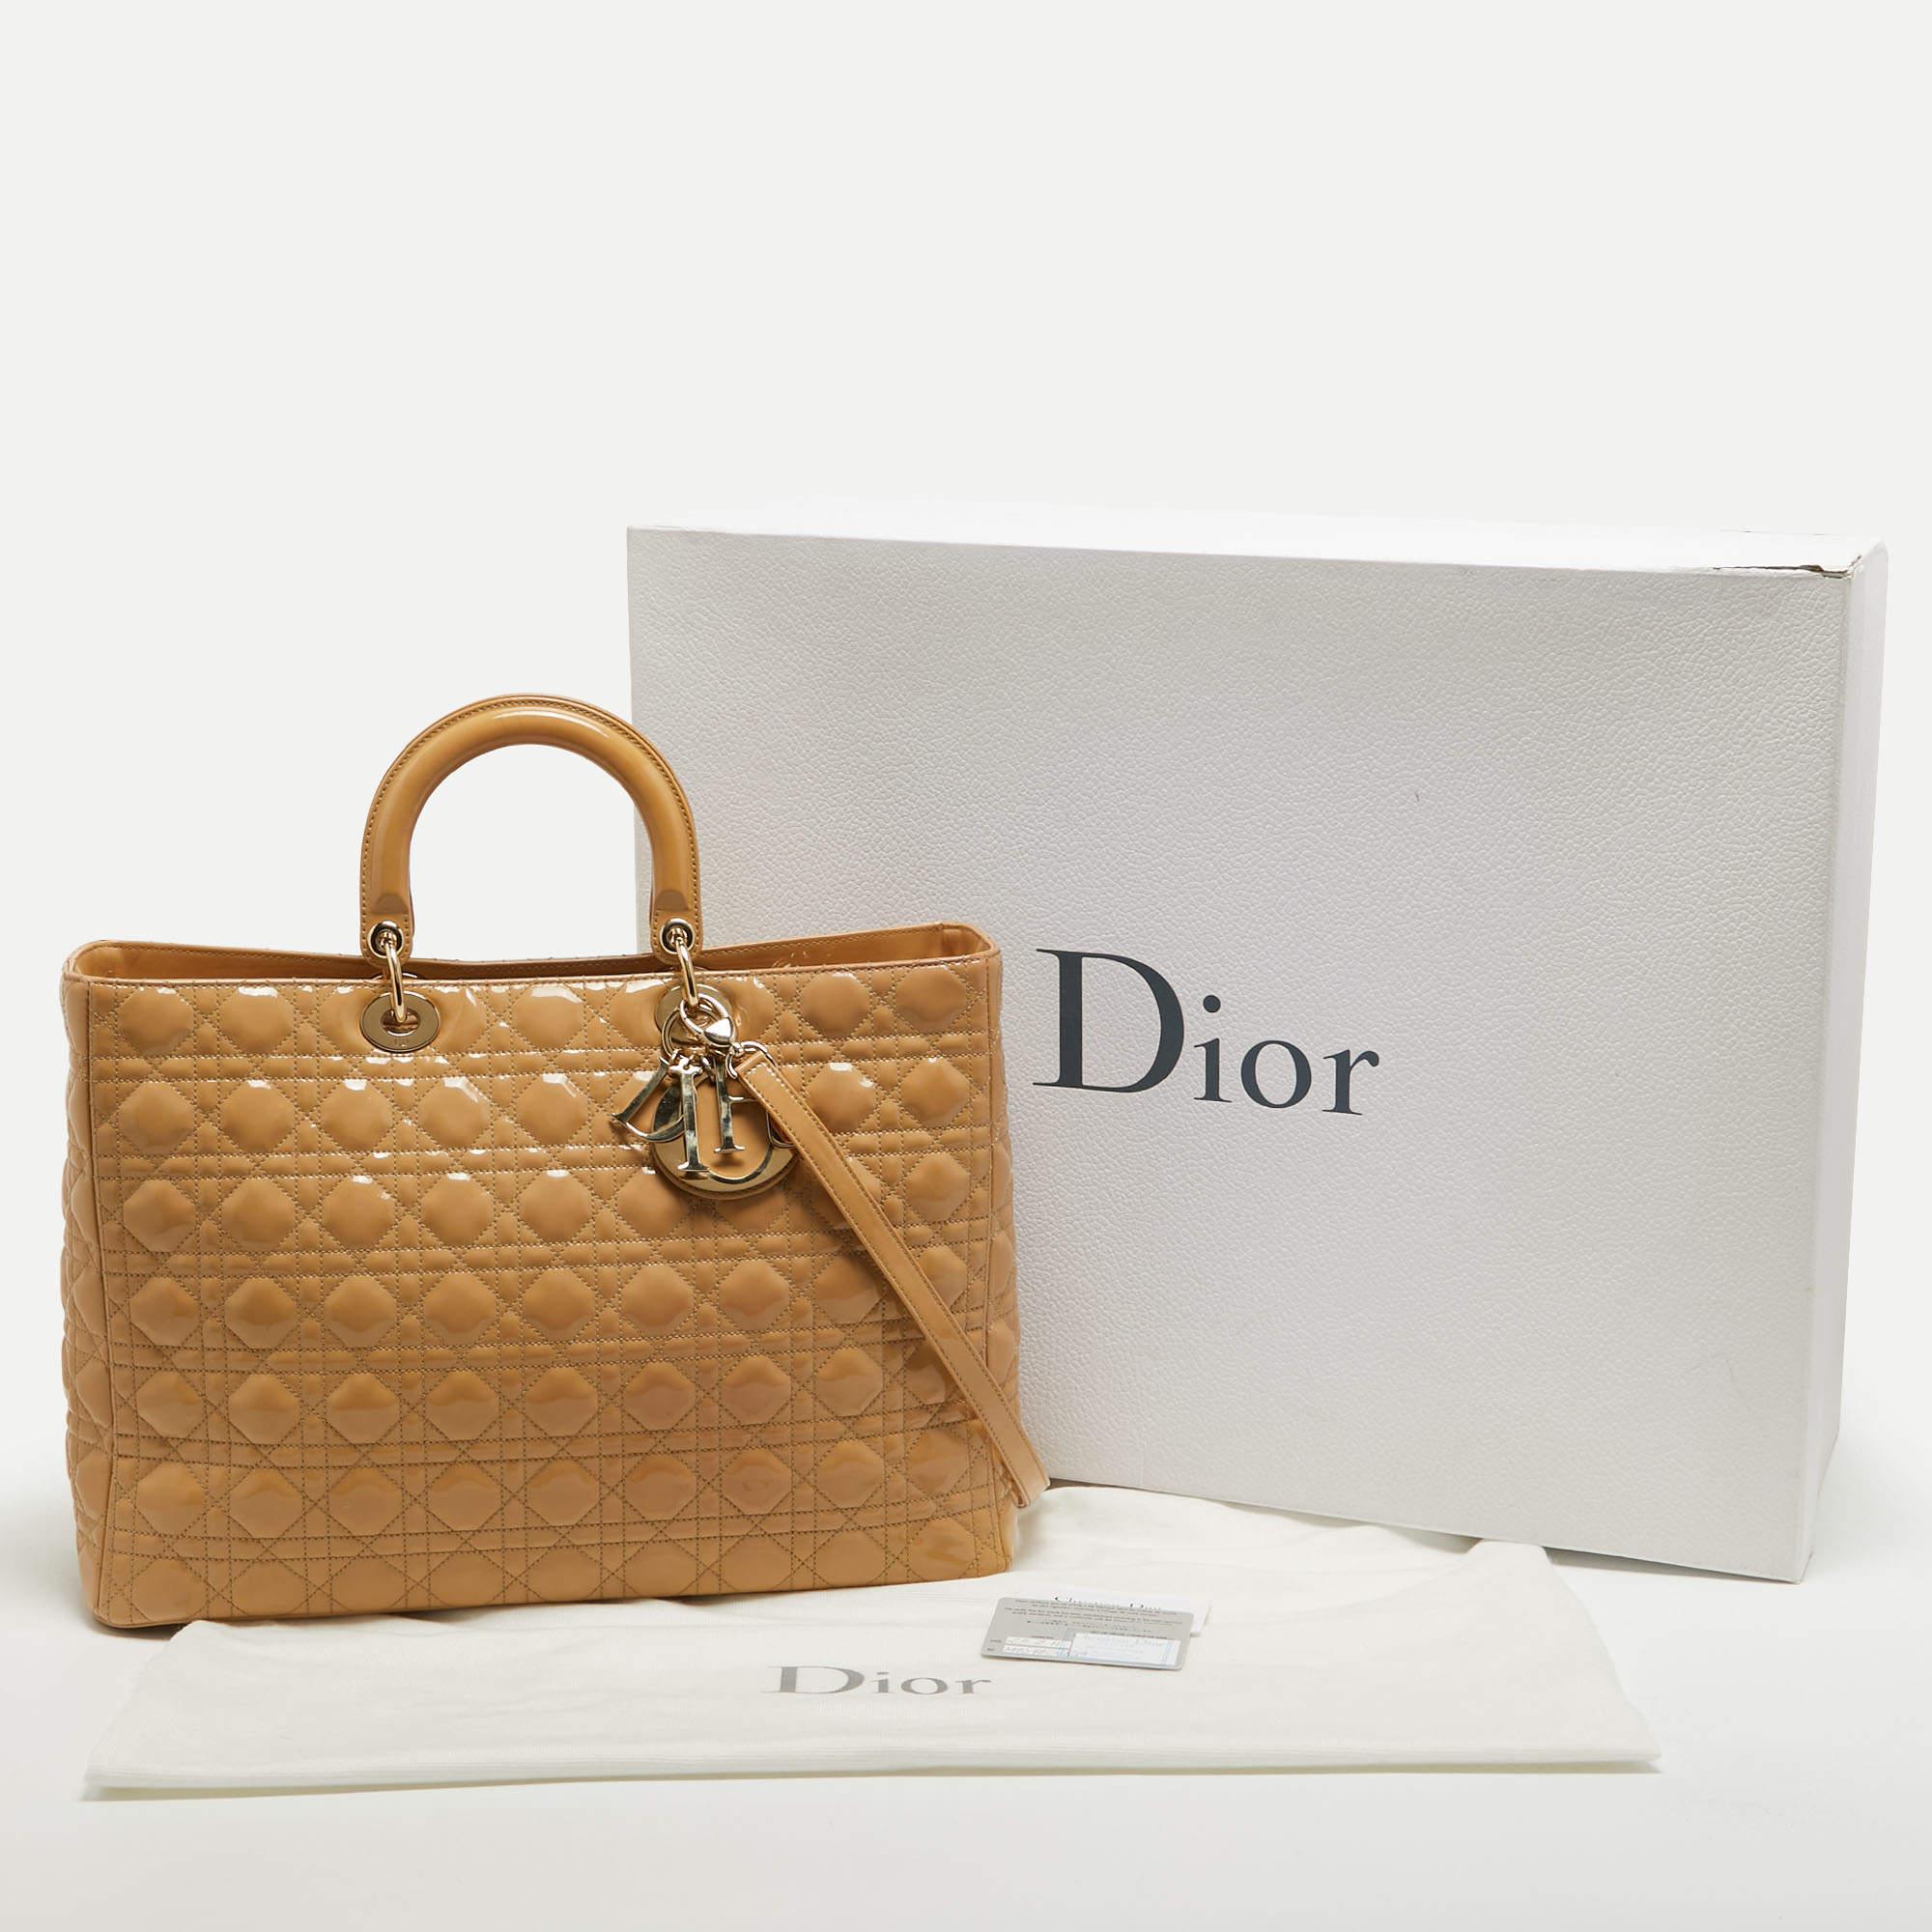 Dior Sac cabas Lady Dior extra large en cuir verni beige cannage 8